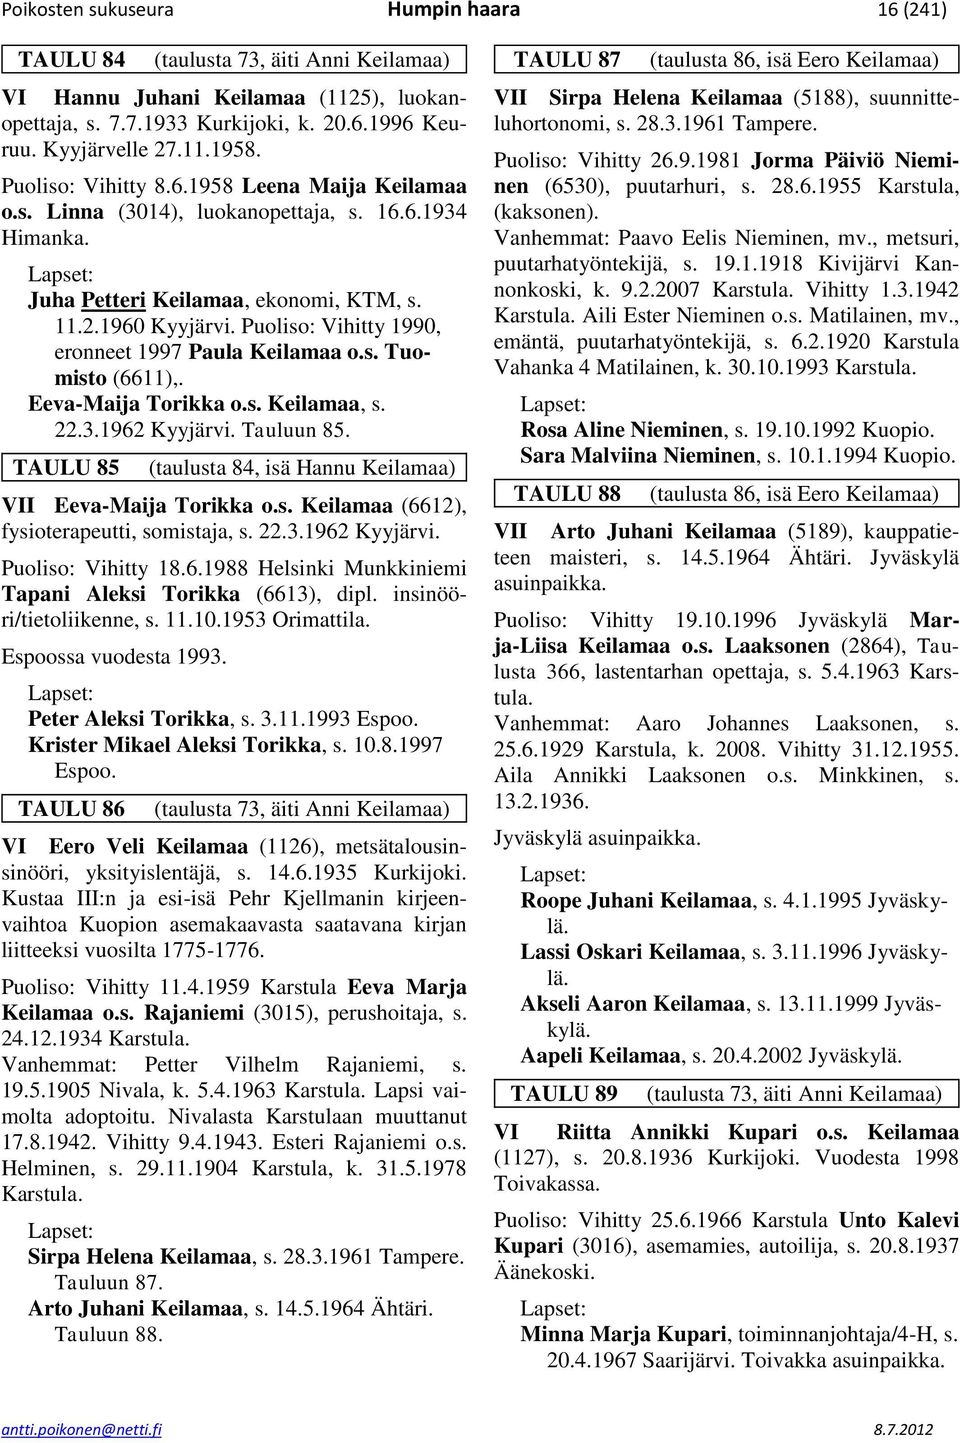 Puoliso: Vihitty 1990, eronneet 1997 Paula Keilamaa o.s. Tuomisto (6611),. Eeva-Maija Torikka o.s. Keilamaa, s. 22.3.1962 Kyyjärvi. Tauluun 85.